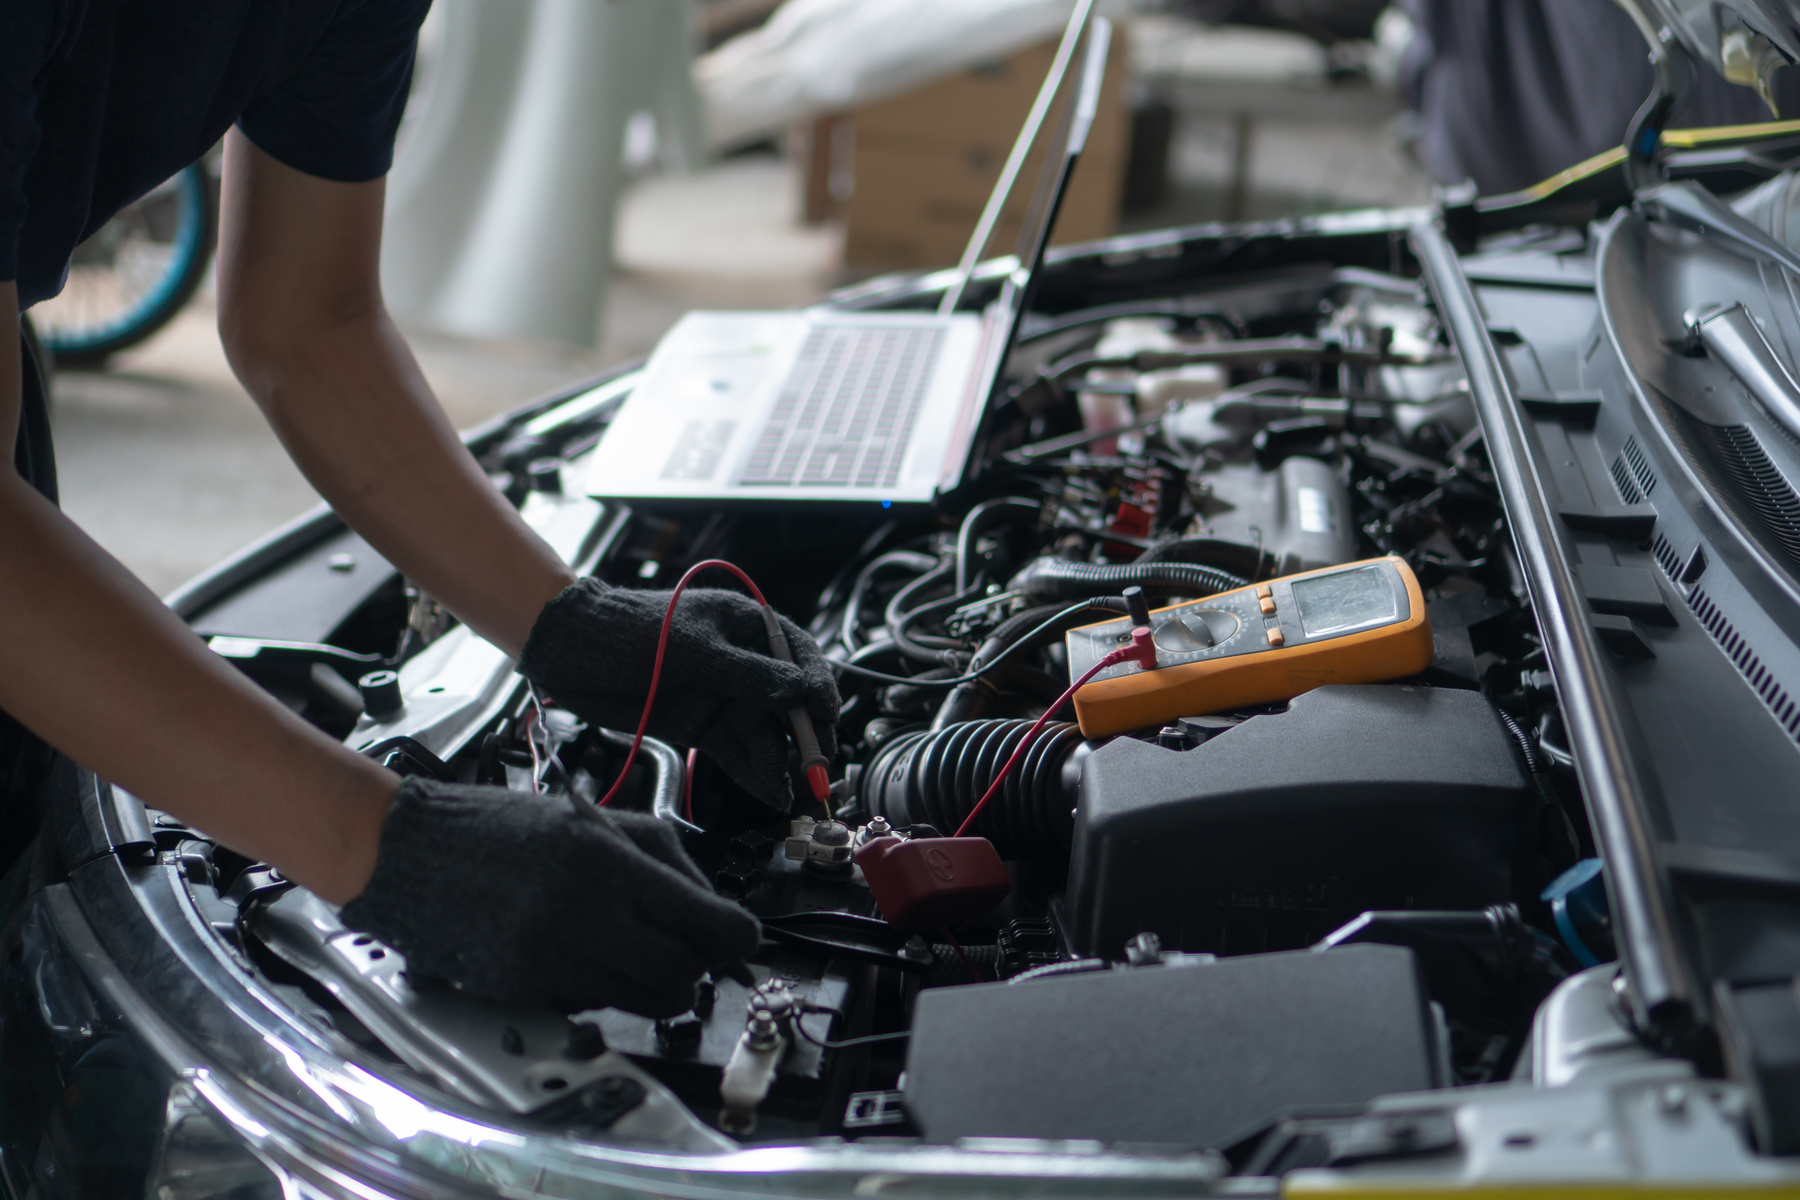 Car repair and maintenance. Performing engine diagnostics